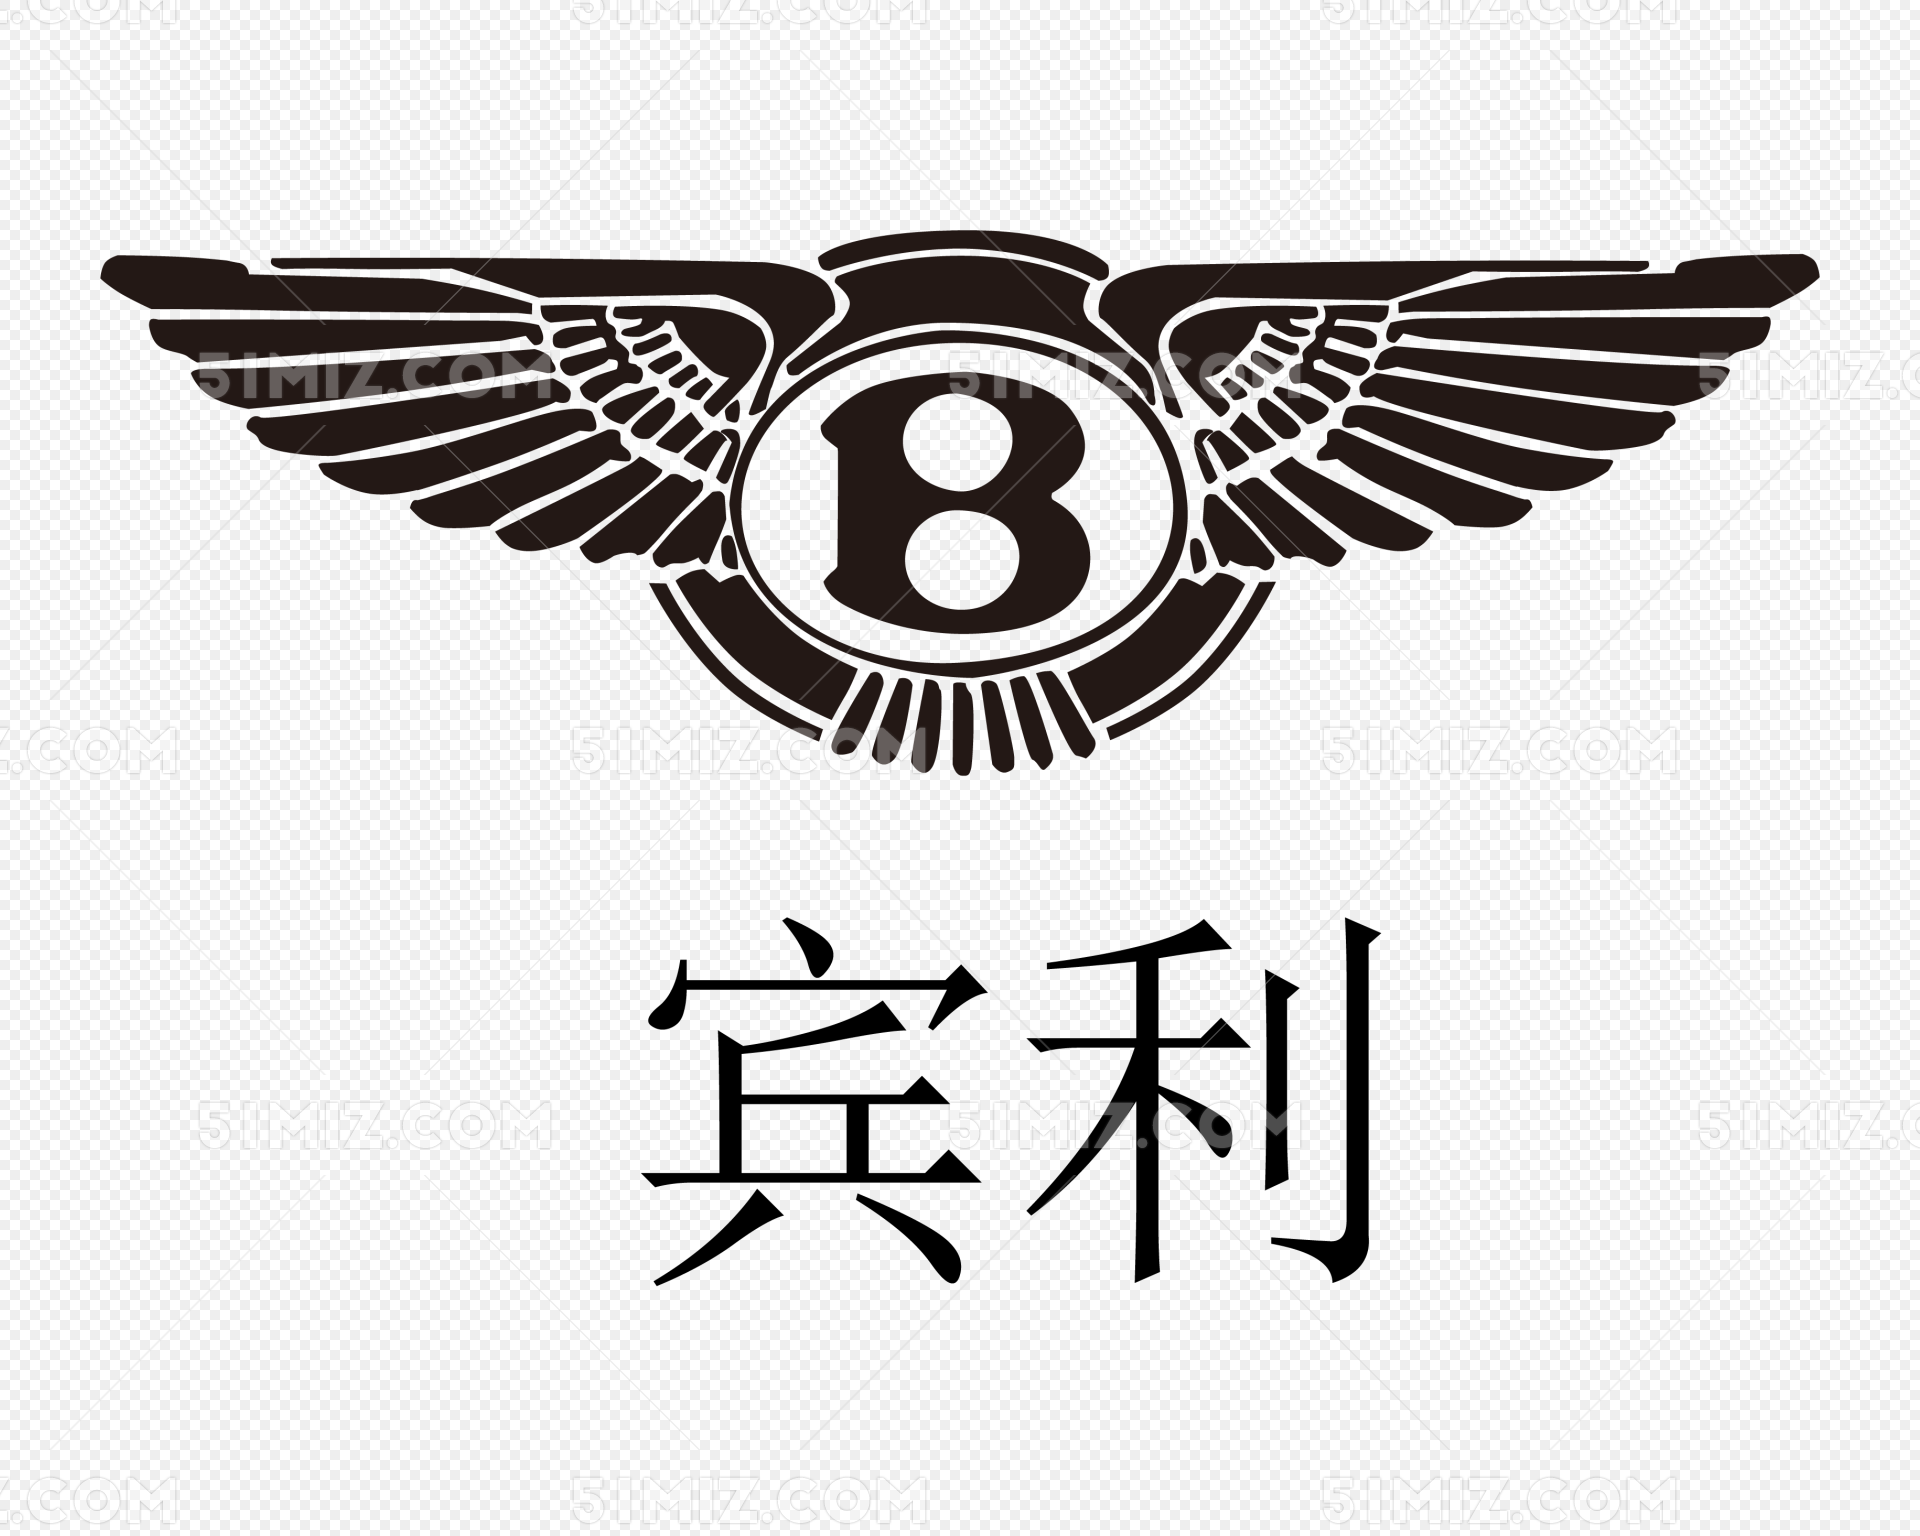 Bentley Logo Wallpapers - Wallpaper Cave